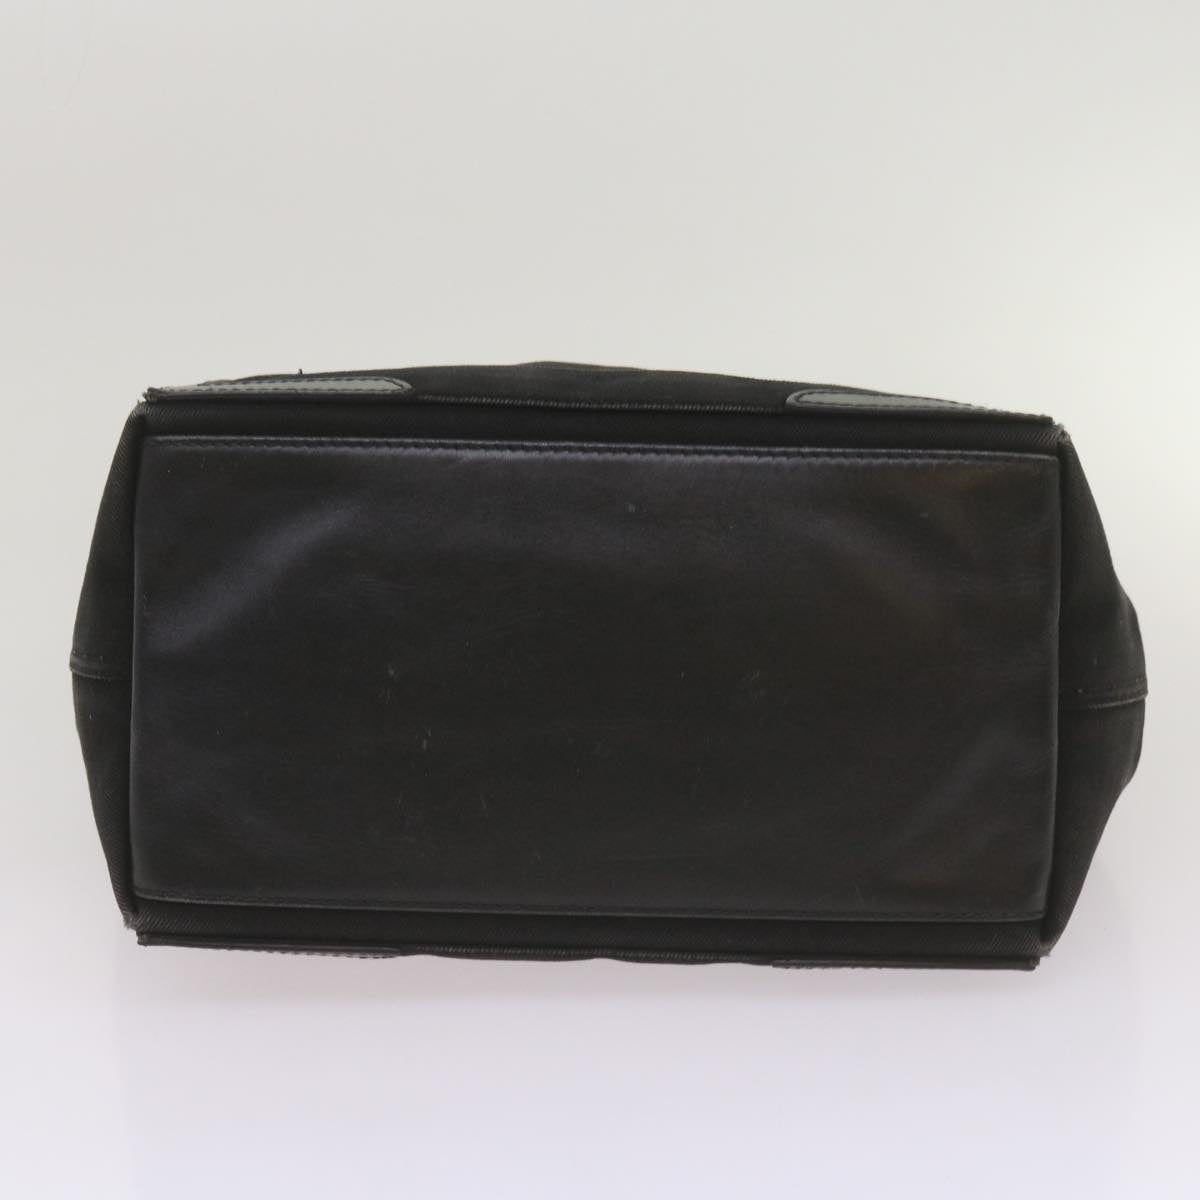 BALENCIAGA Navy Cabas Hand Bag Canvas Black 339936 Auth yk11125